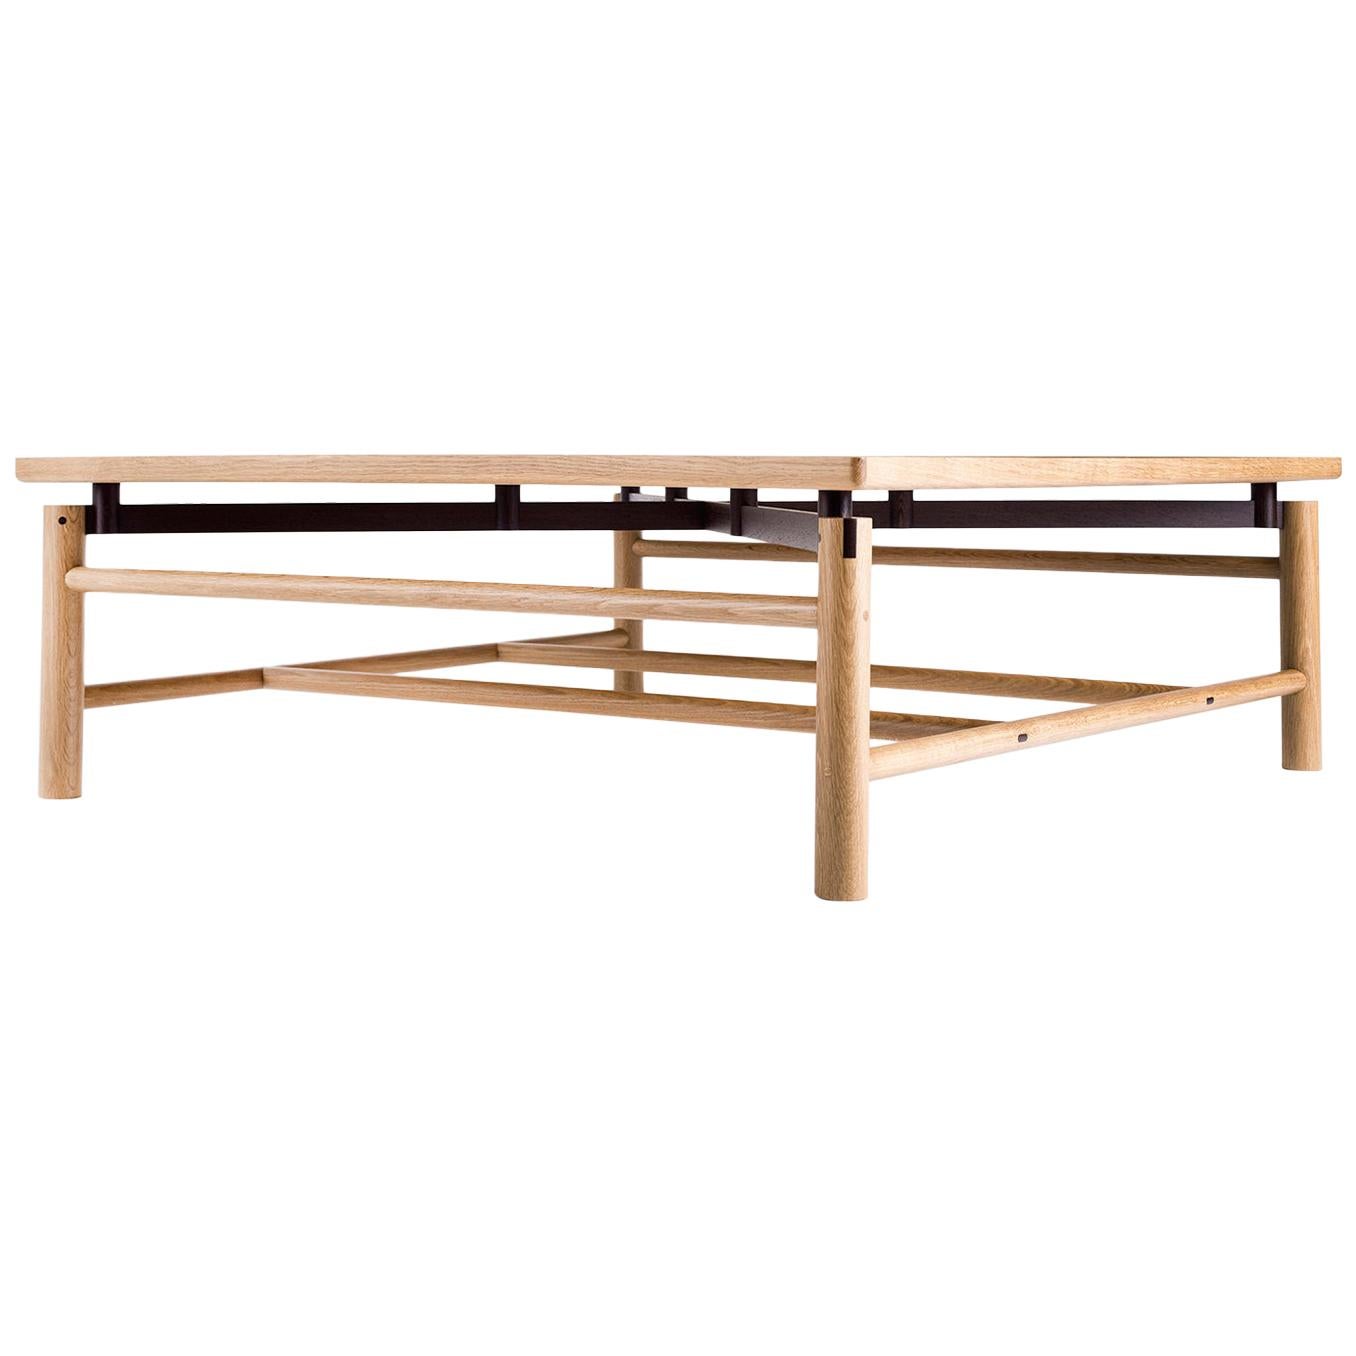 Table basse Beth, chêne blanc cassé Rift, wengé, sur mesure, design semi-good, moderne